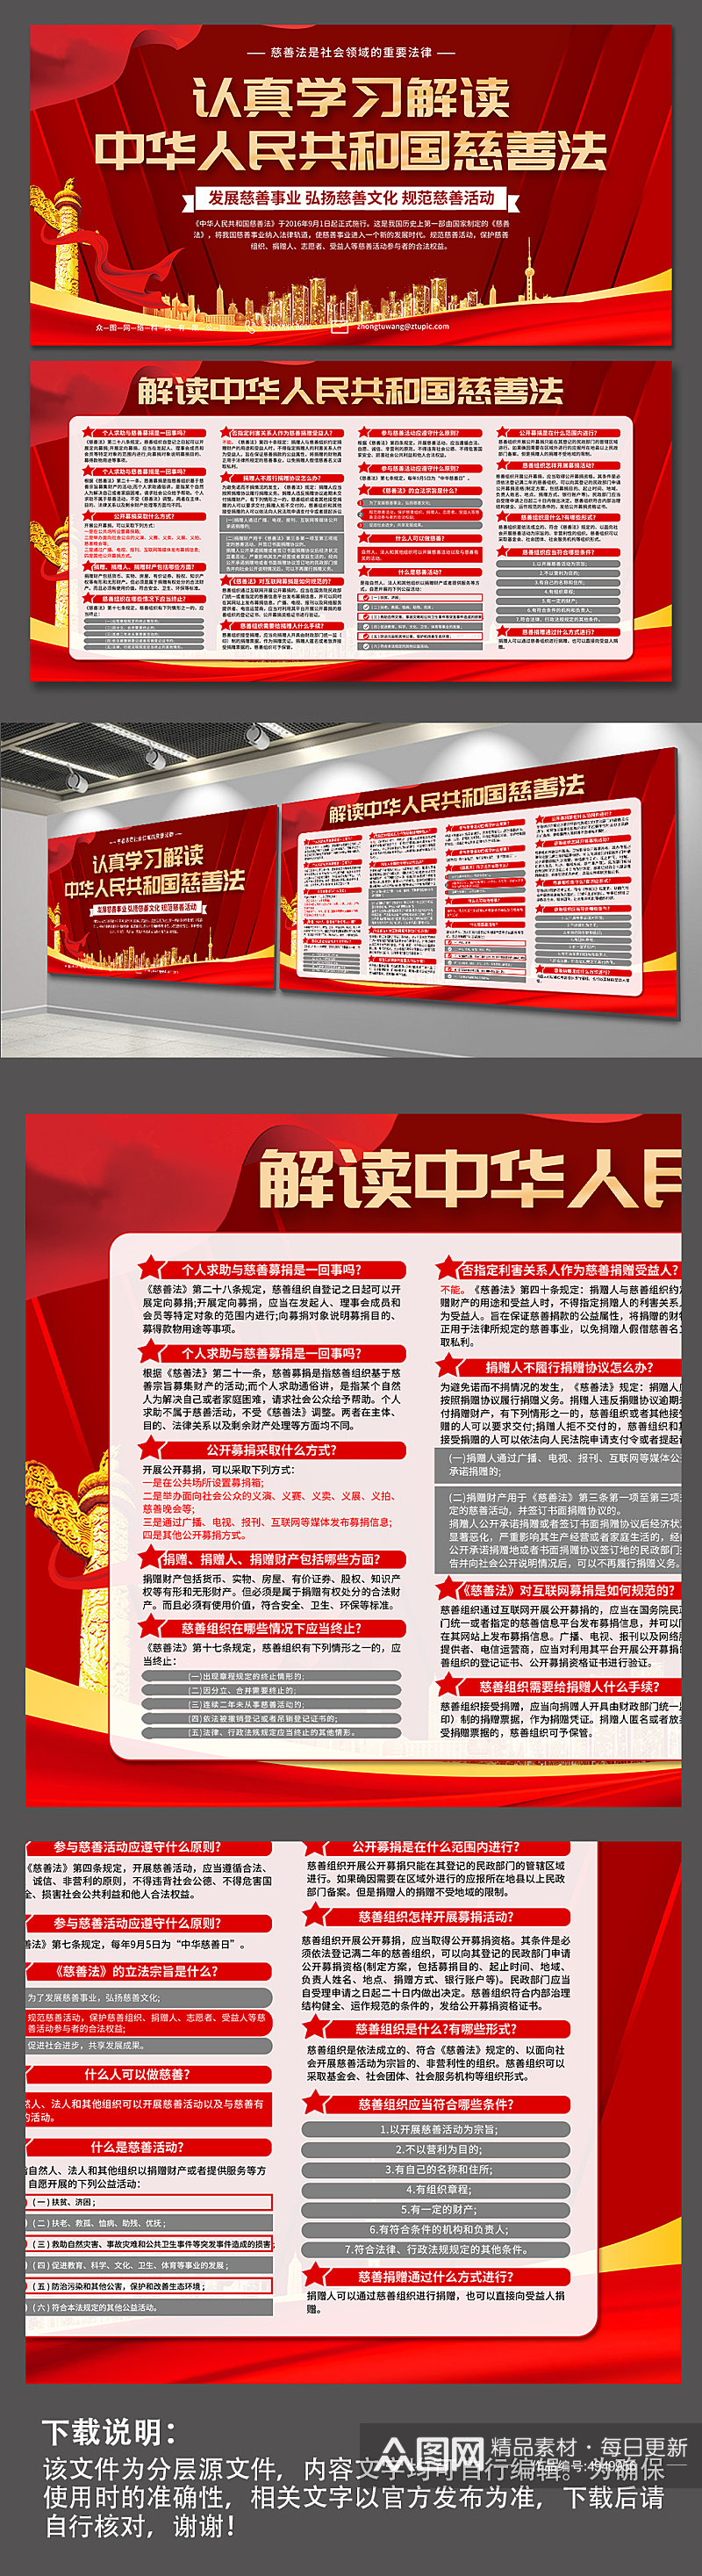 红色中华人民共和国慈善法科普展板素材